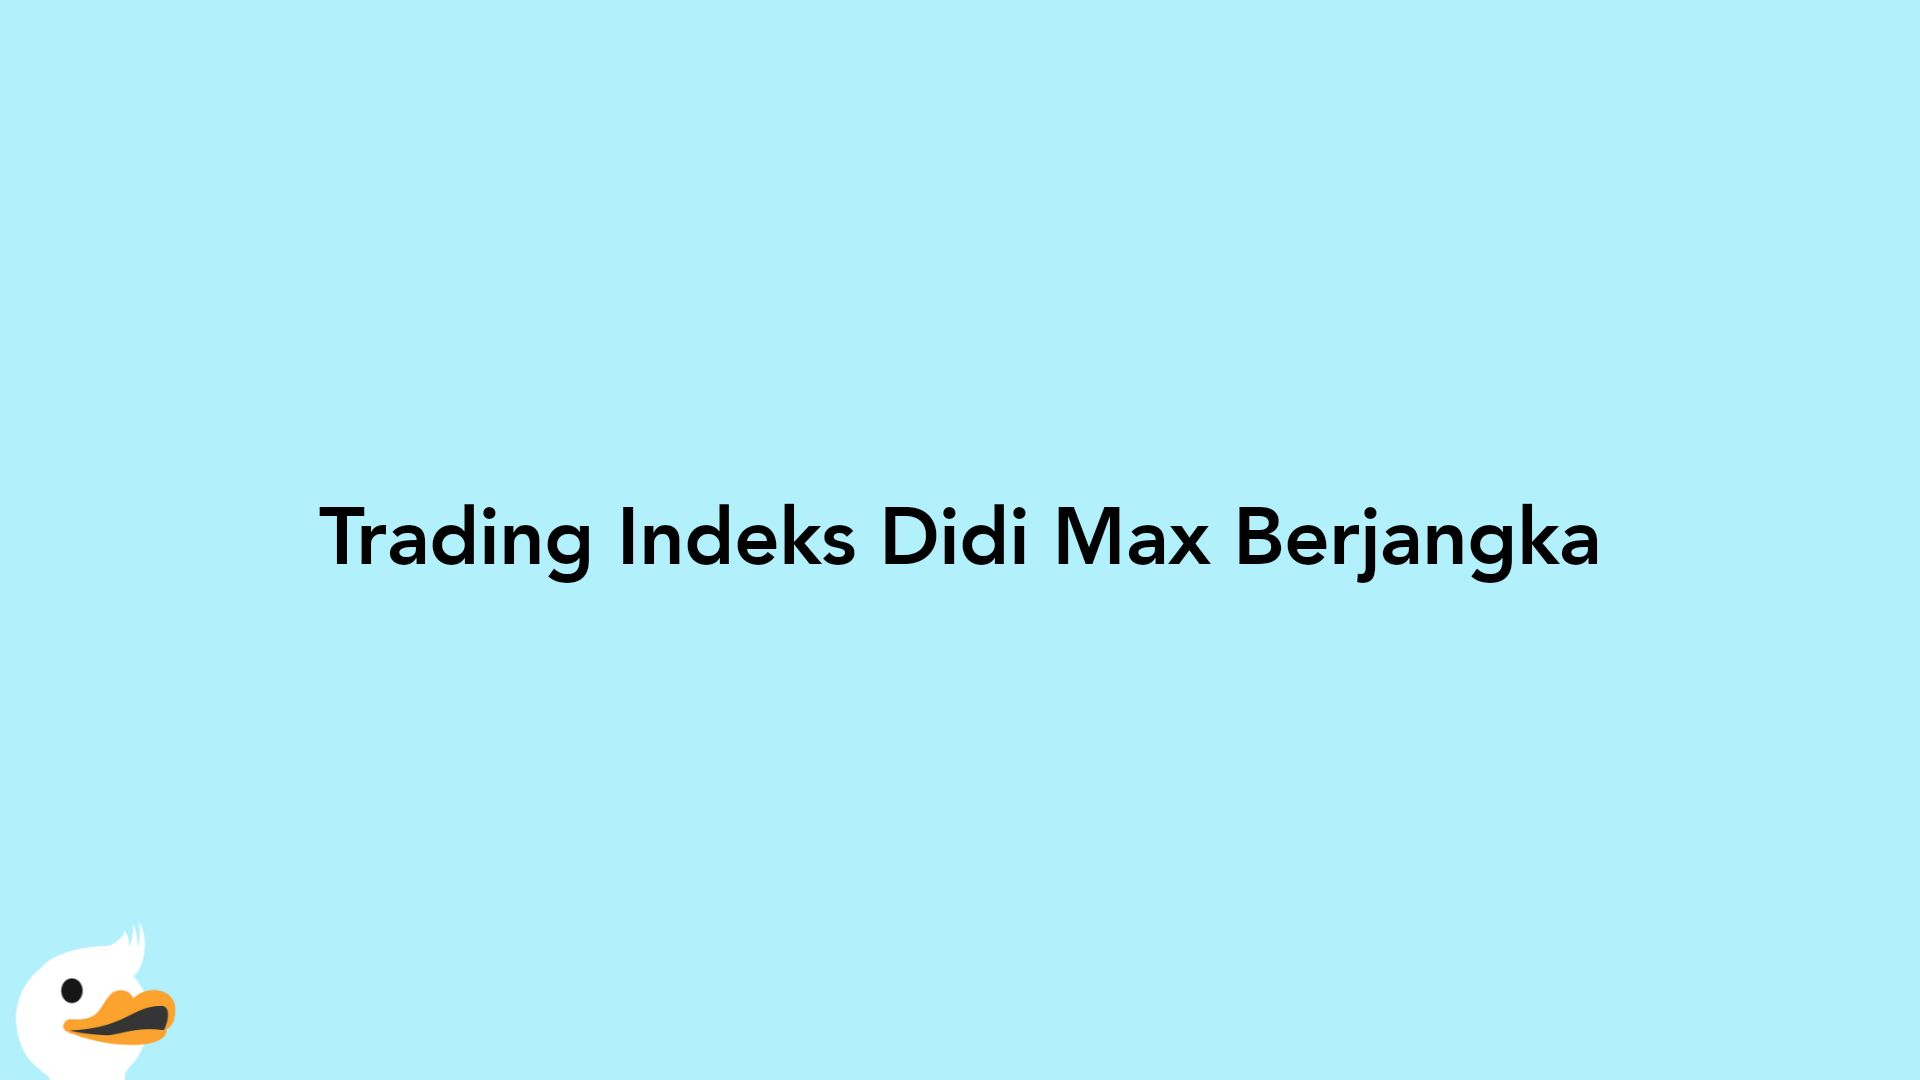 Trading Indeks Didi Max Berjangka